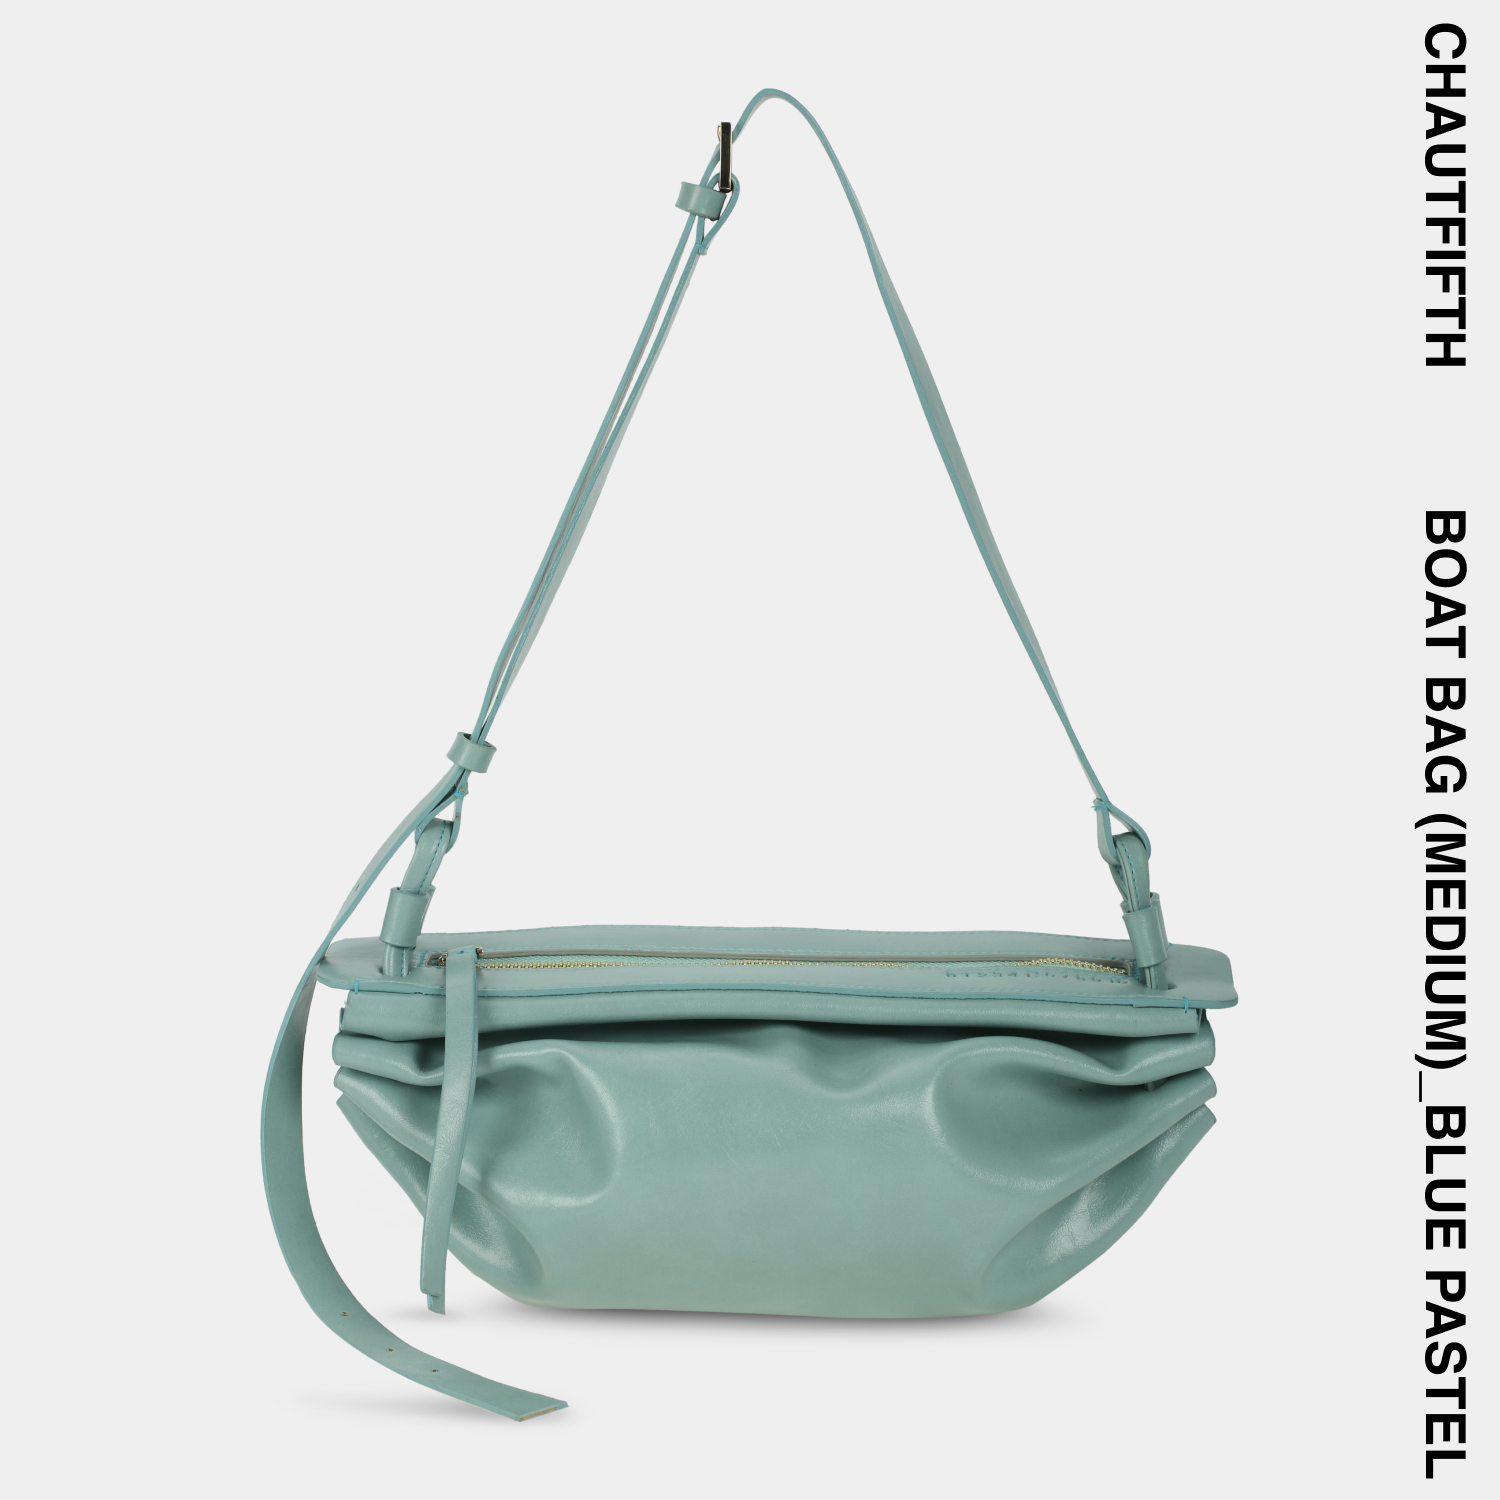 Túi xách BOAT BAG size lớn (M) màu Xanh ngọc pastel - CHAUTFIFTH